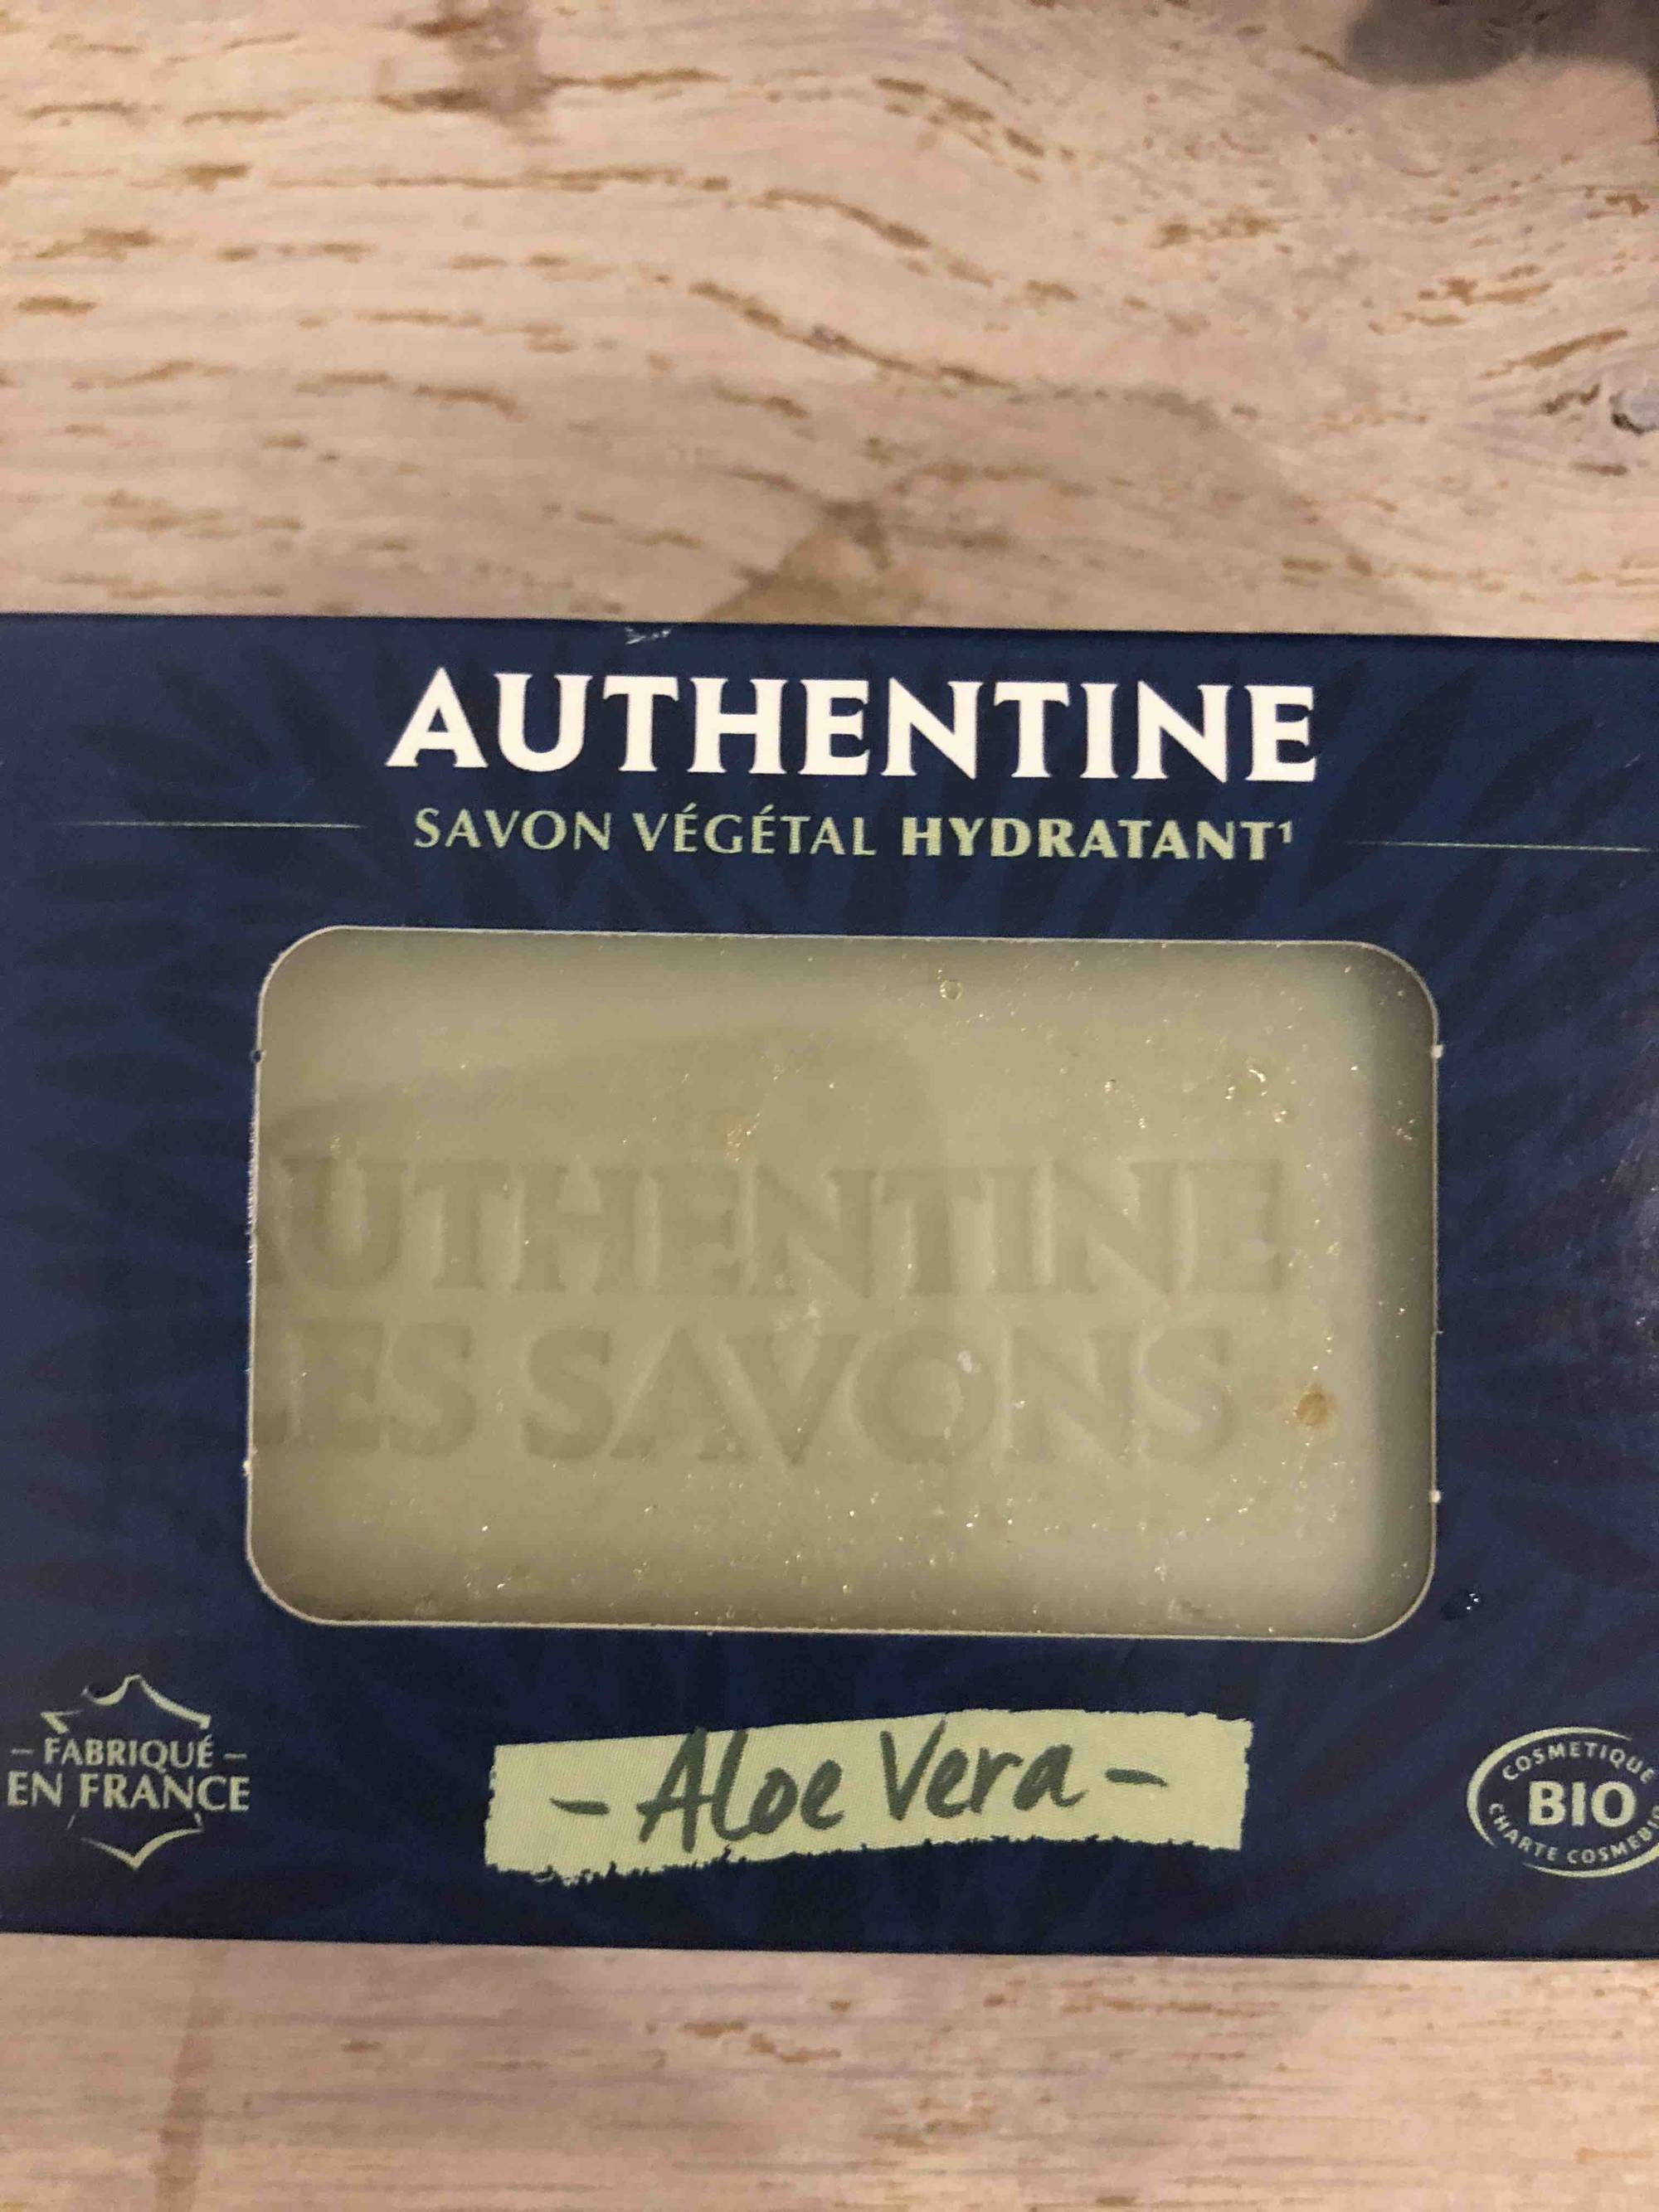 AUTHENTINE - Savon végétal hydratant à l'aloe vera